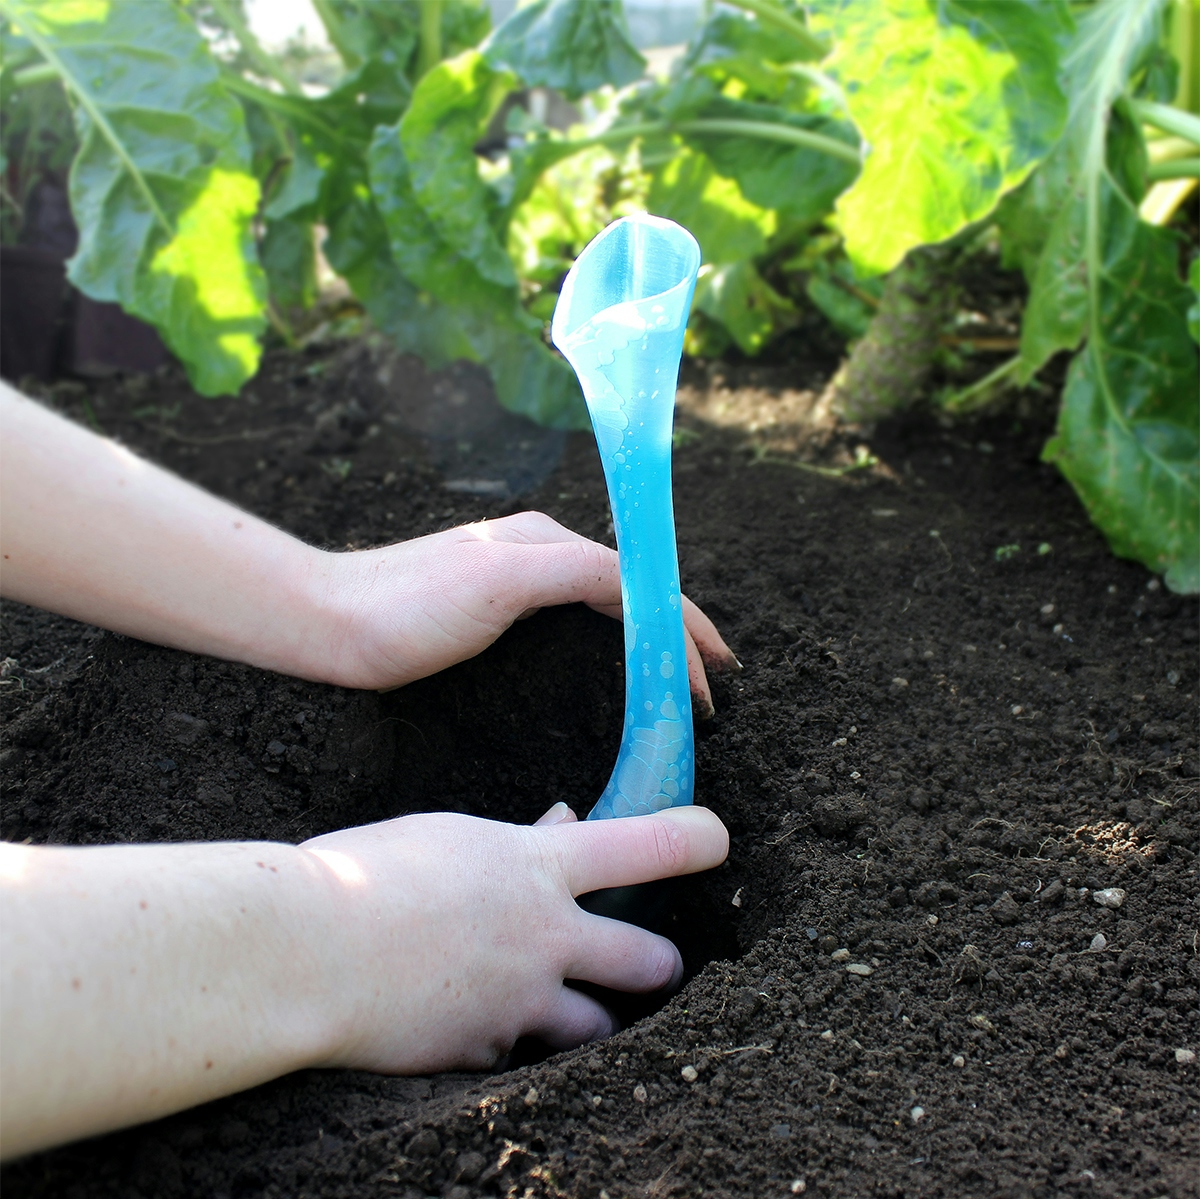 Planting portable speaker in garden soil.